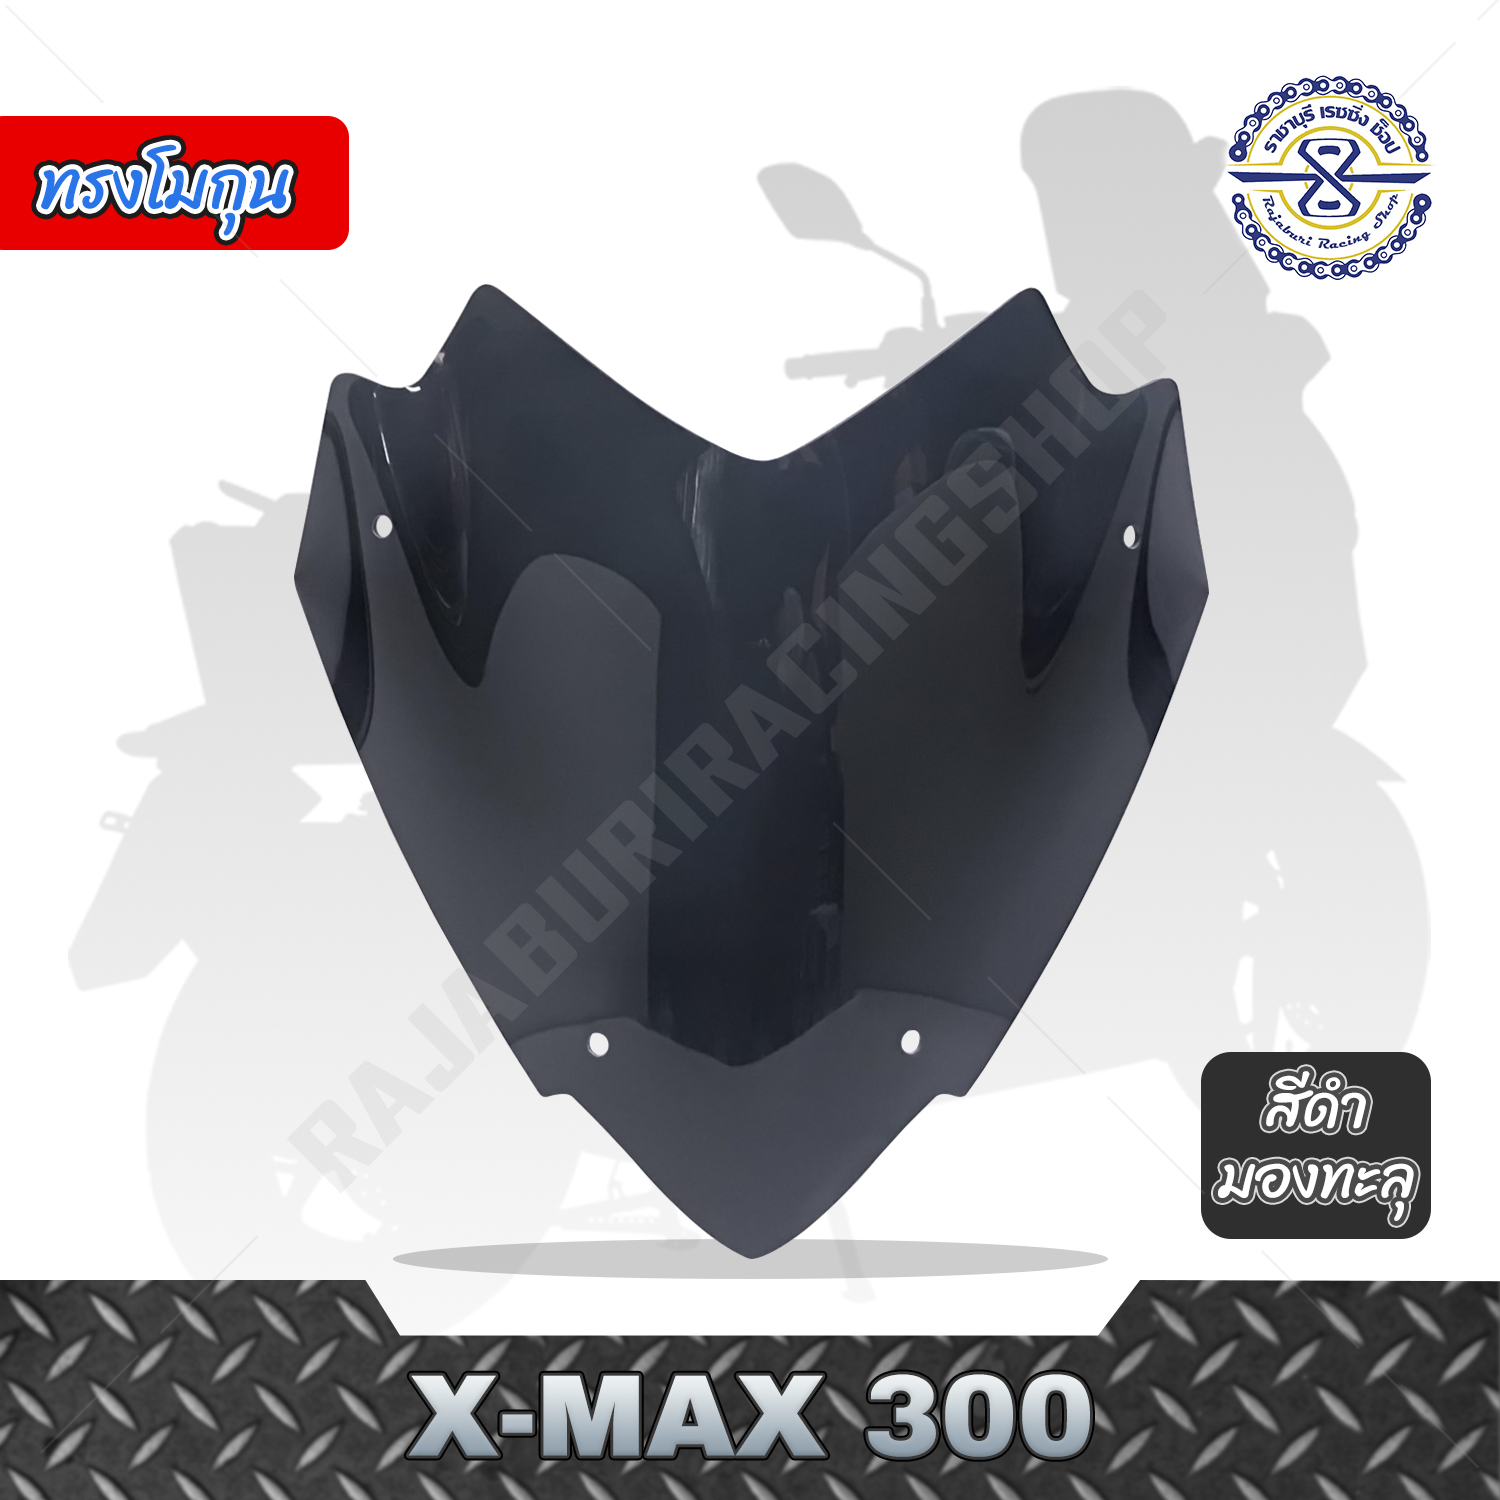 ชิวหน้า XMAX 300 ทรงโมกุน สีดำมองทะลุ